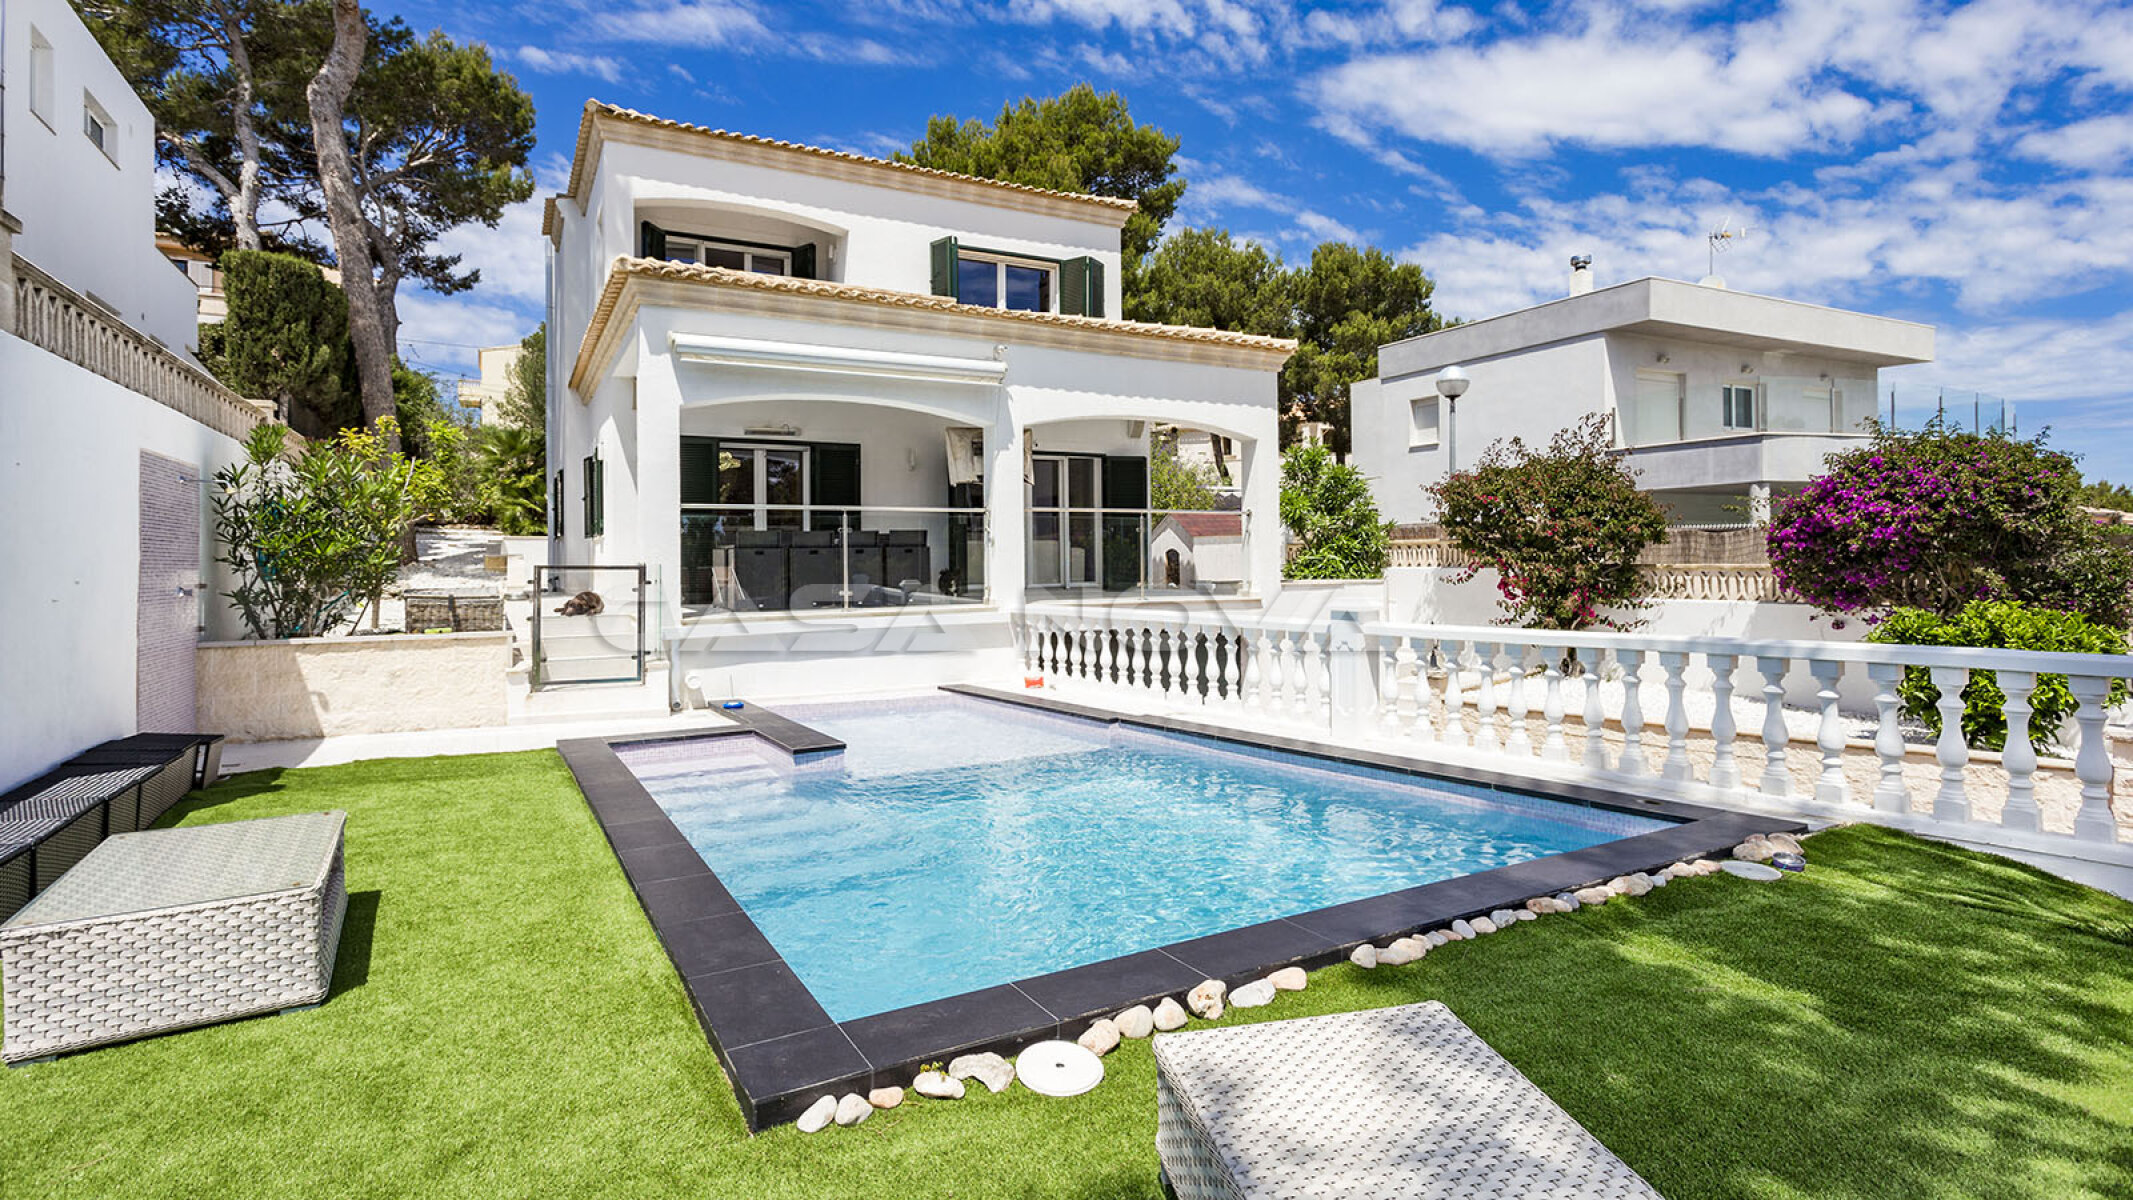 Moderne Mallorca Villa mit Pool in Traumlage